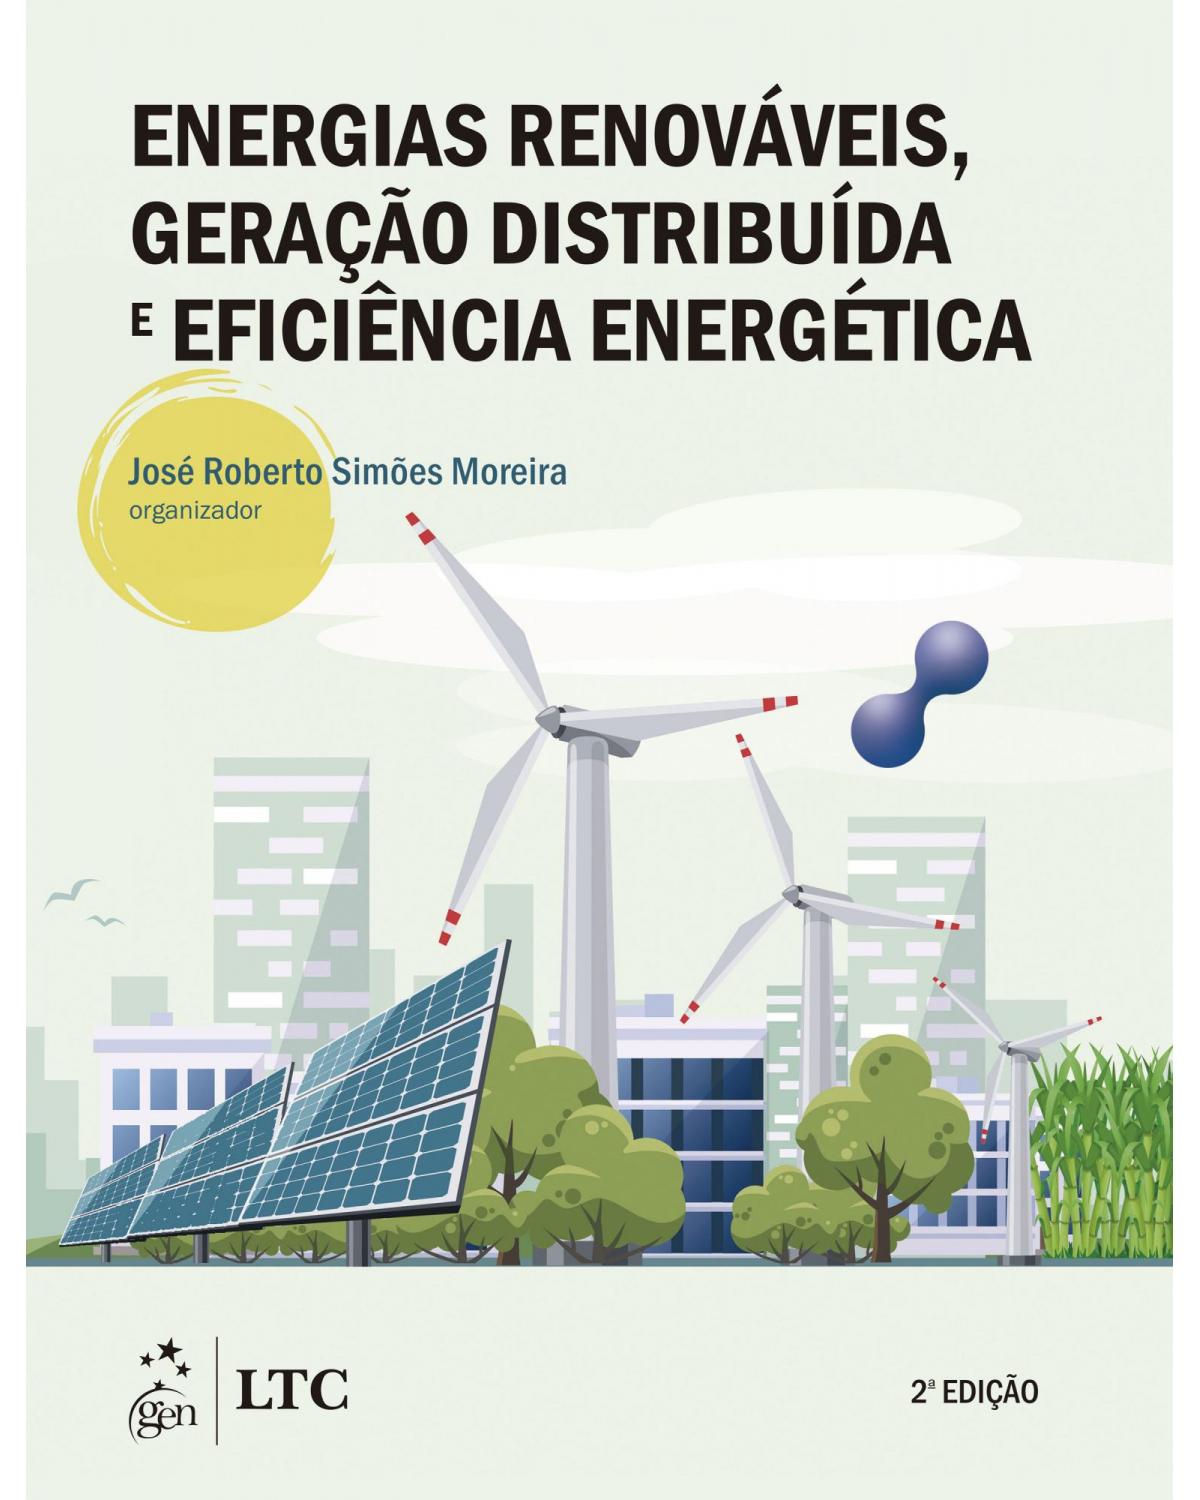 Energias renováveis, geração distribuída e eficiência energética - 2ª Edição | 2021